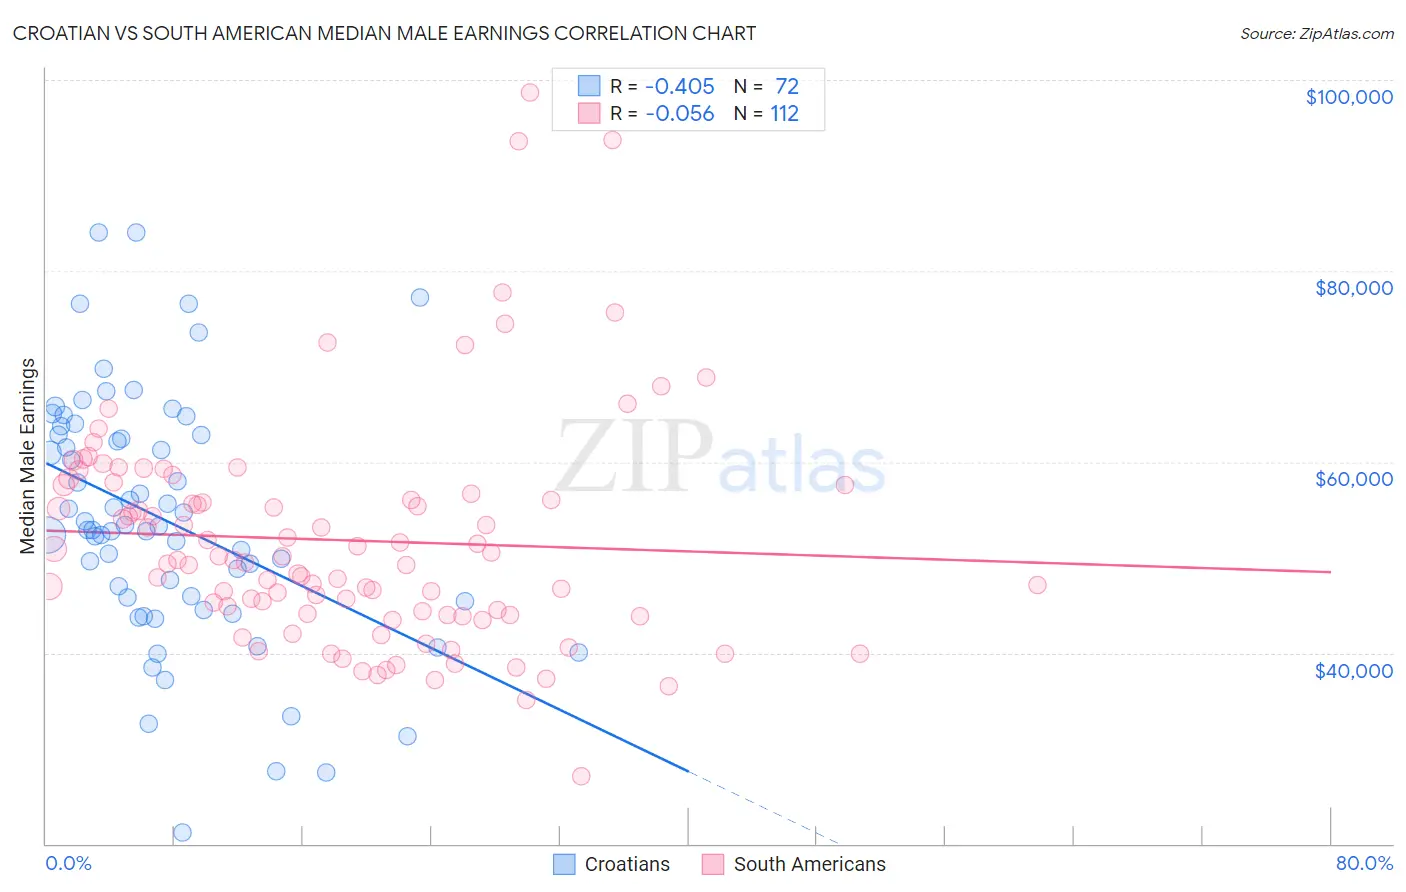 Croatian vs South American Median Male Earnings